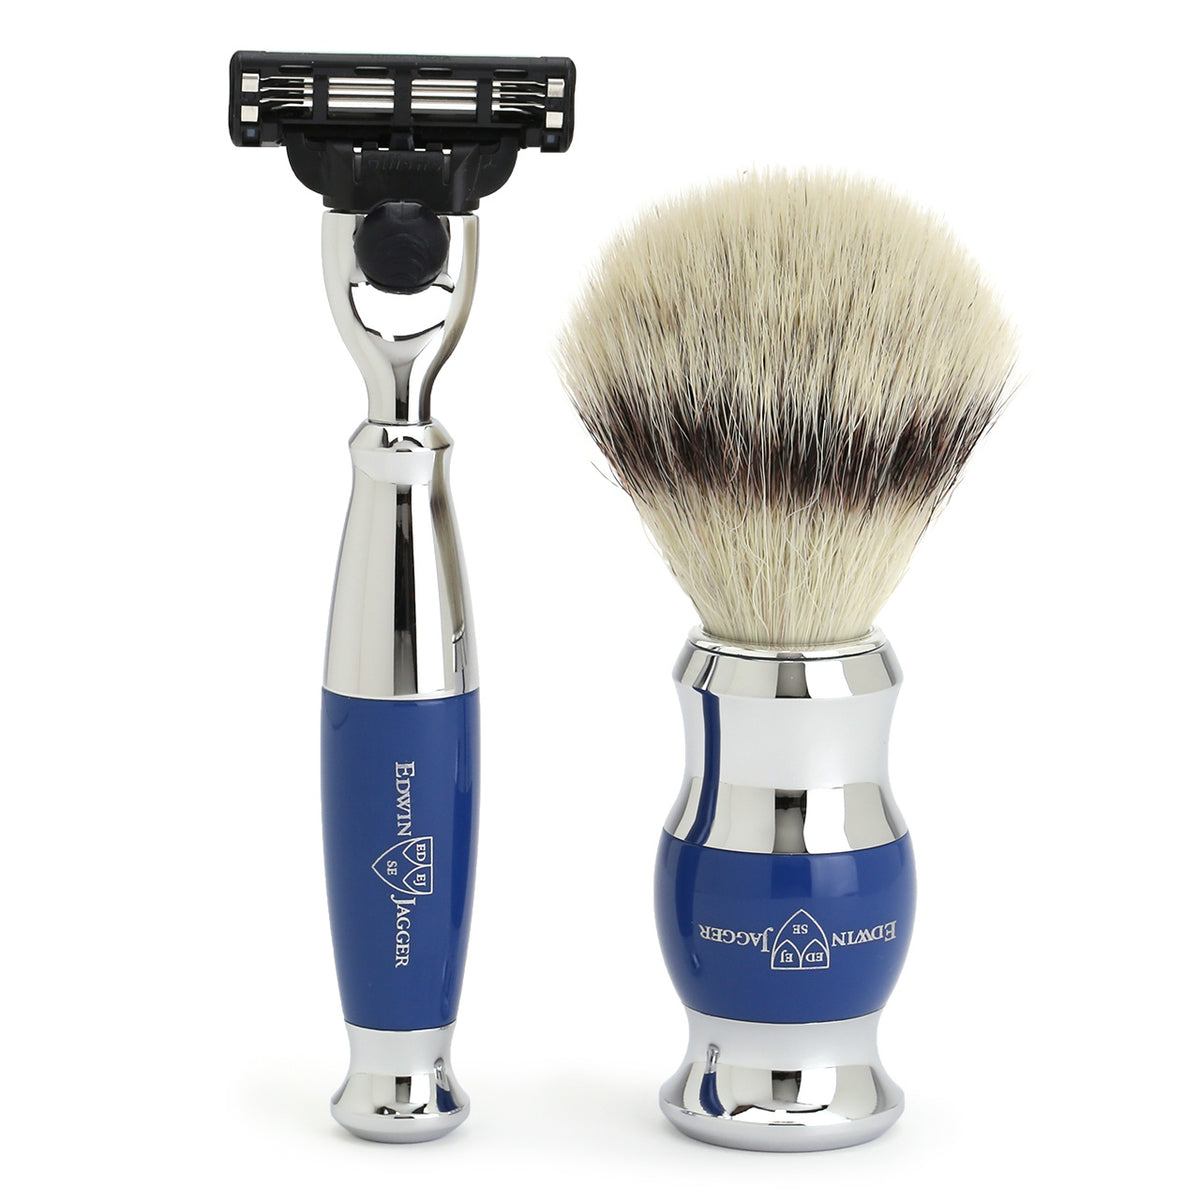 Mach3 Razor and Cruelty-Free Shaving Brush in Blue